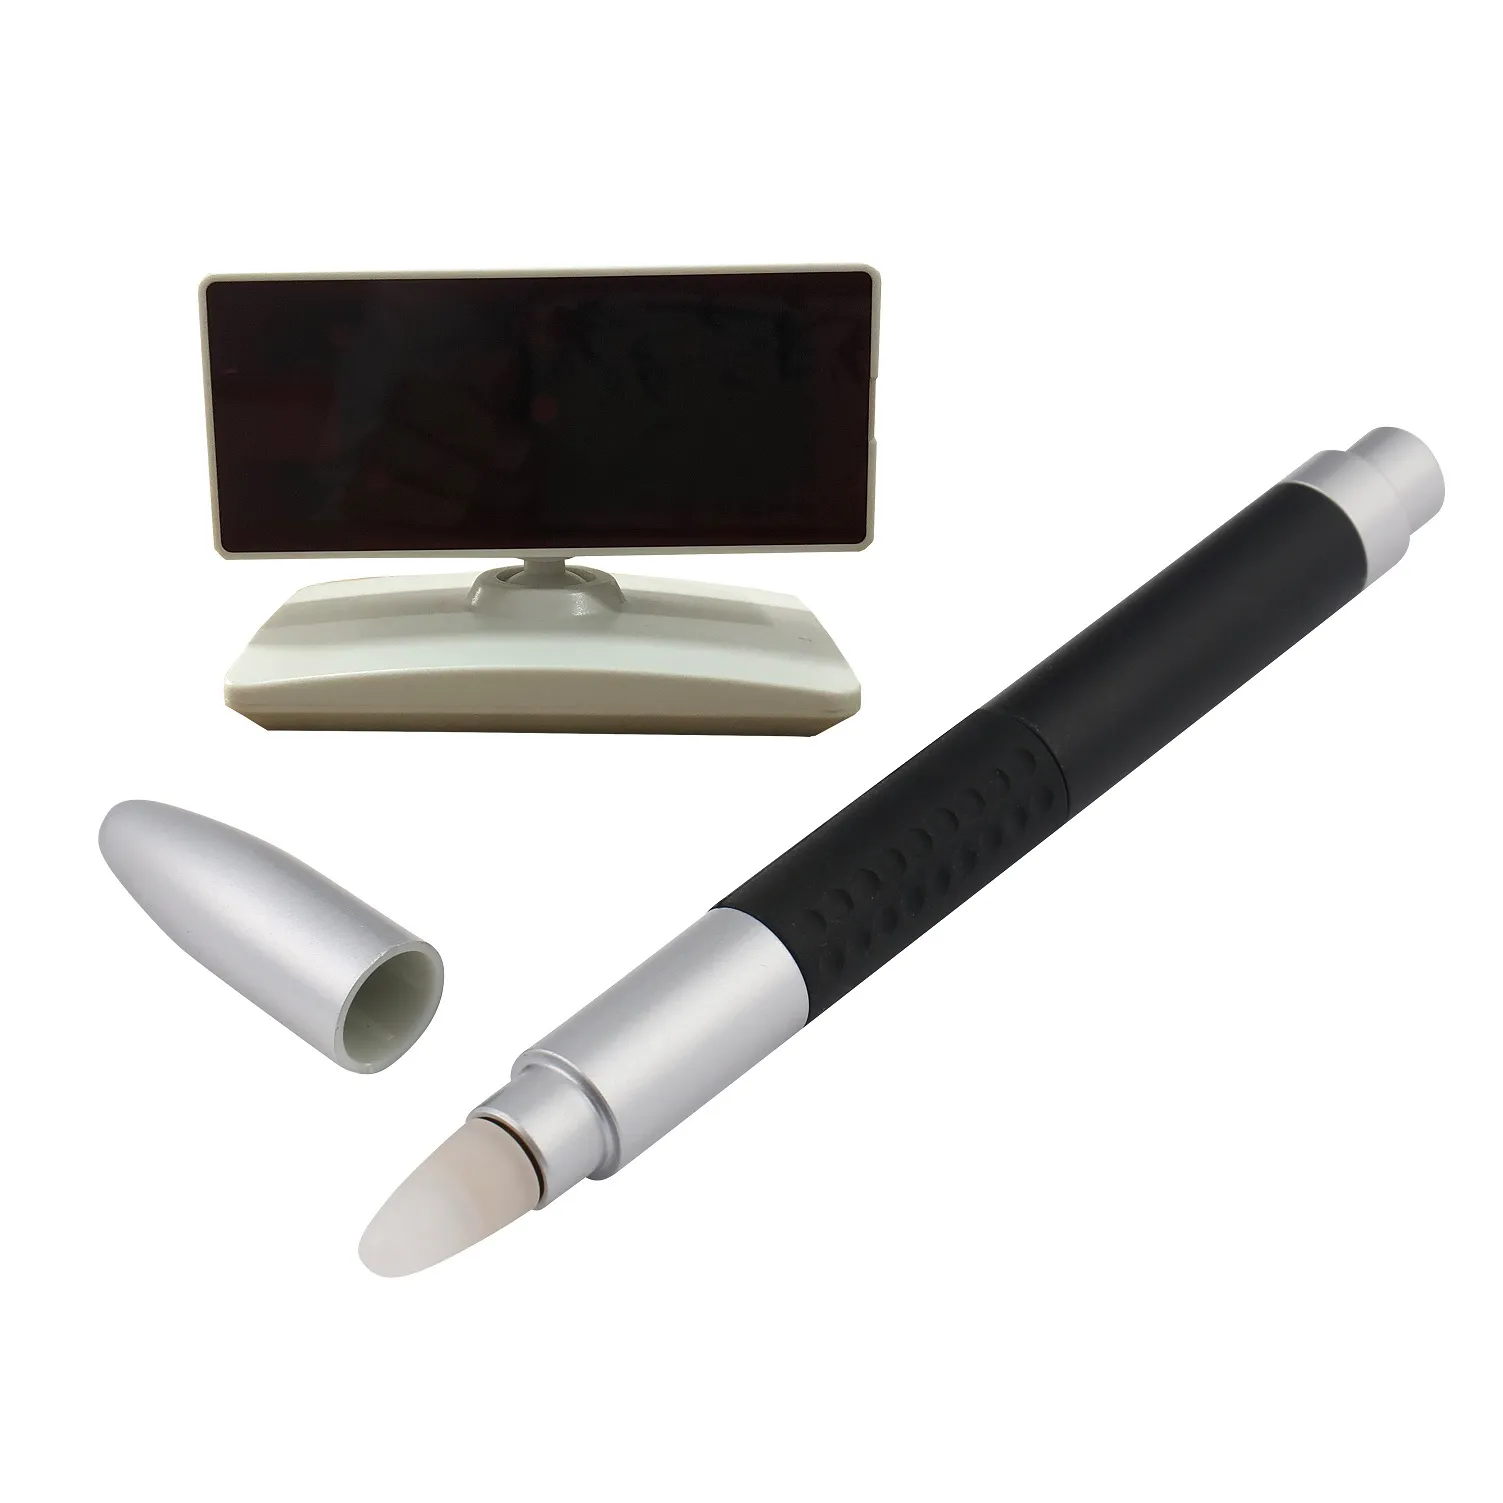 Interaktiv whiteboard -system mini smartboard med infrar￶d penna f￶r projektor idealisk f￶r undervisning p￥ hemmam￶tepresentation